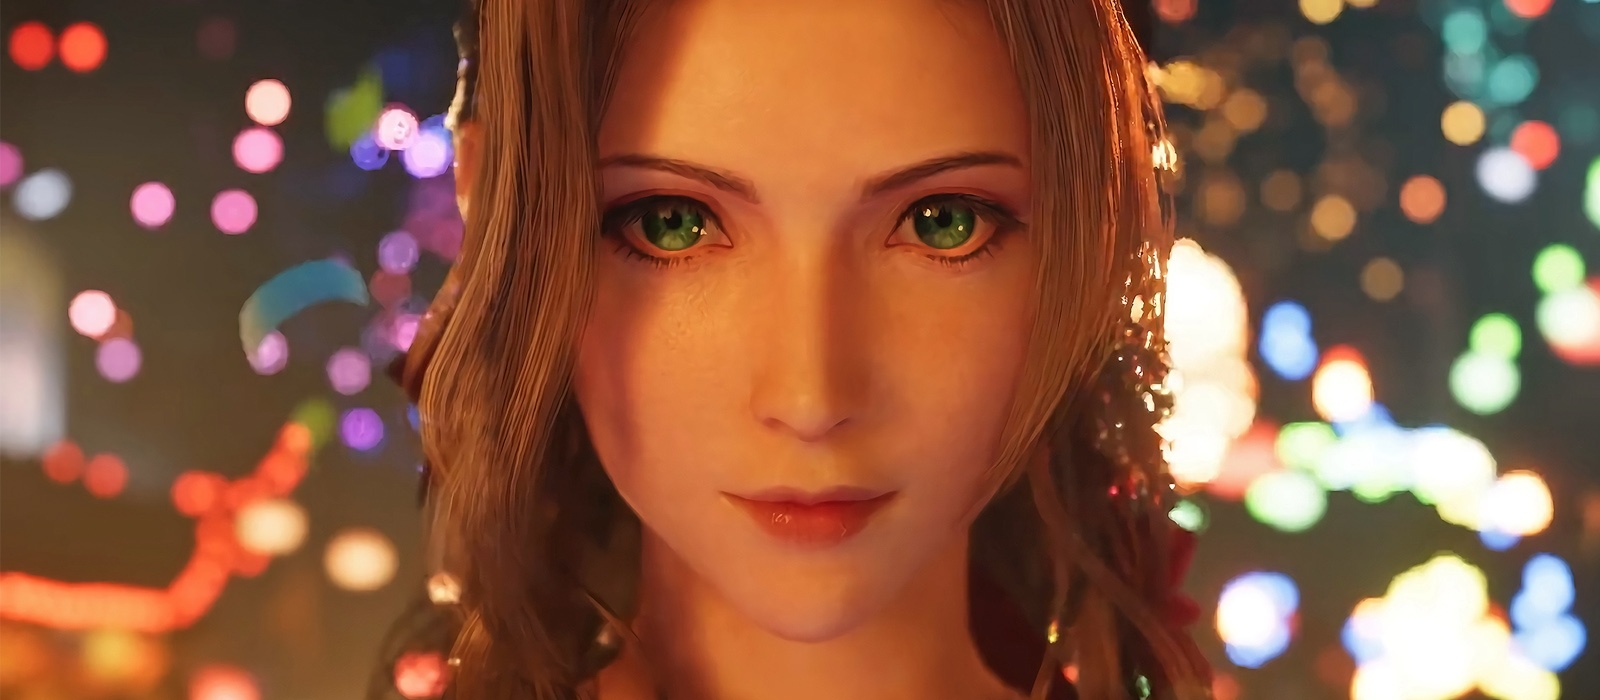 Актриса, озвучившая Айрис в Final Fantasy 7, закосплеила свою героиню. Разработчики в восторге